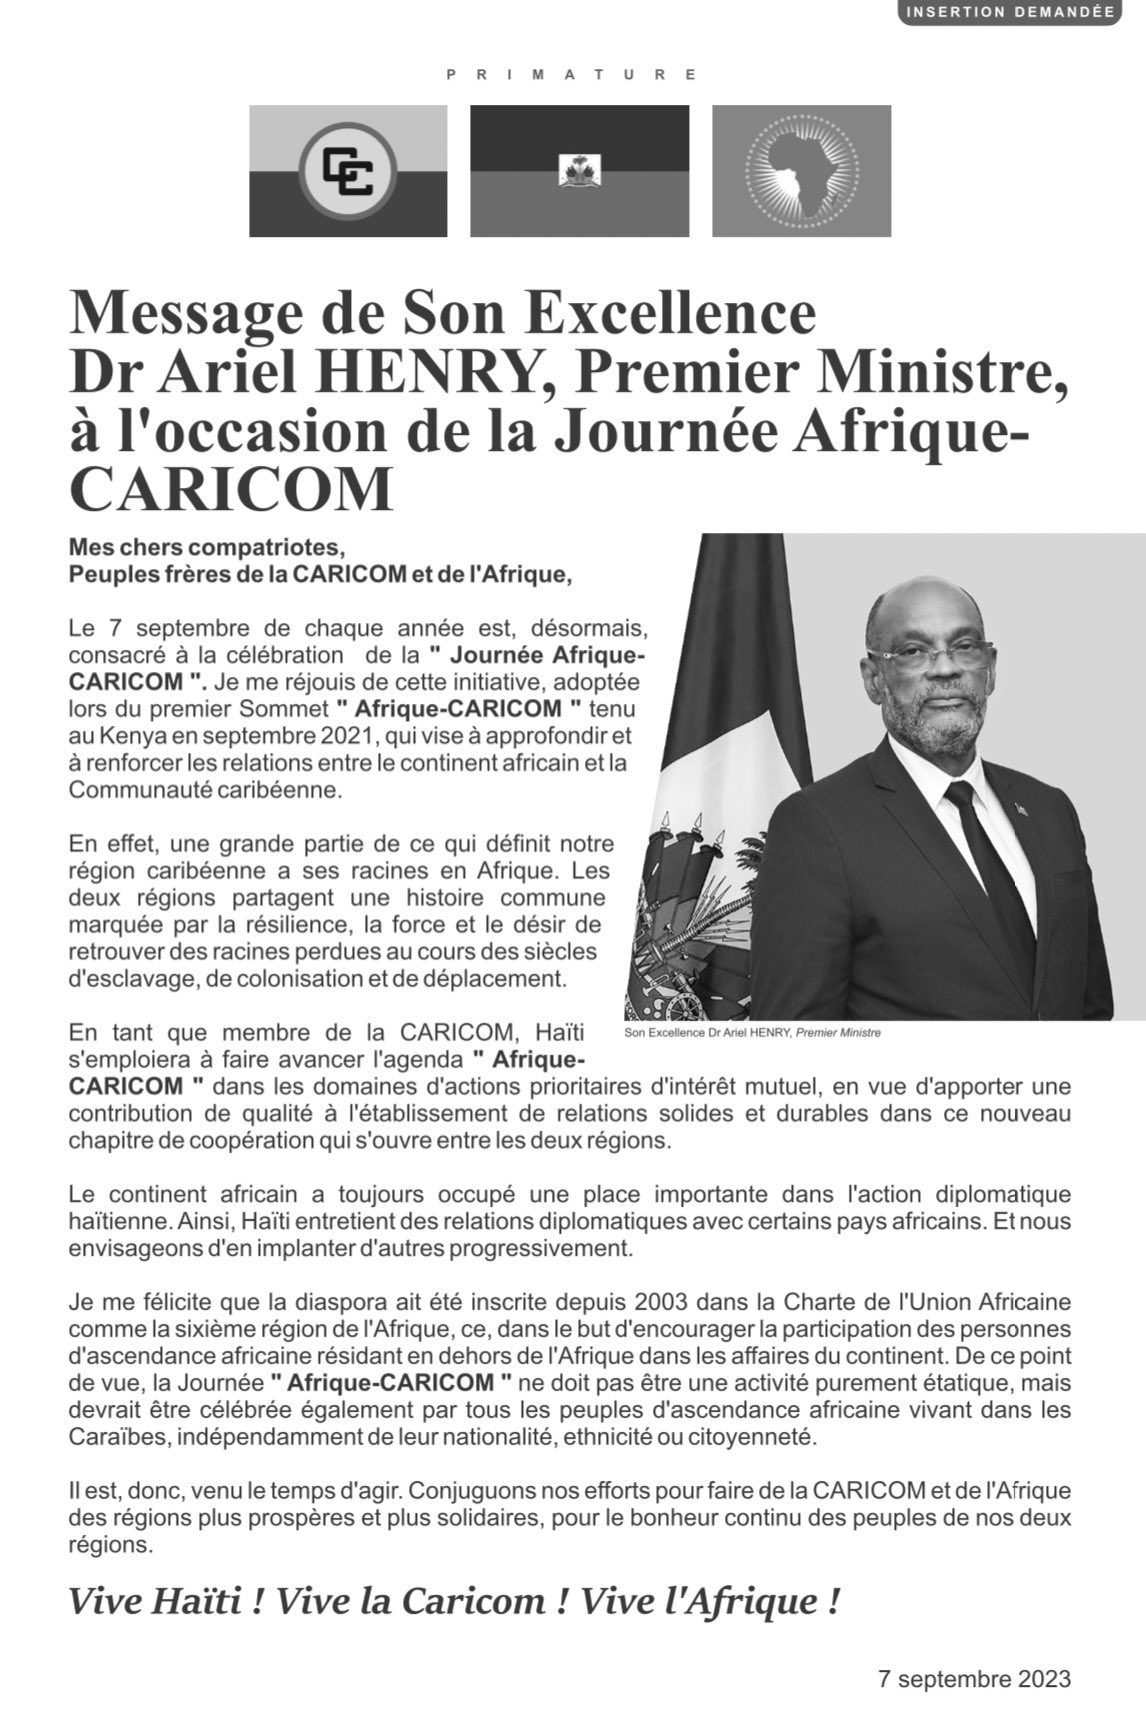 Message de Son Excellence Dr Ariel HENRY, Premier Ministre, à l’occasion de la Journée Afrique-CARICOM <br>7 septembre 2023